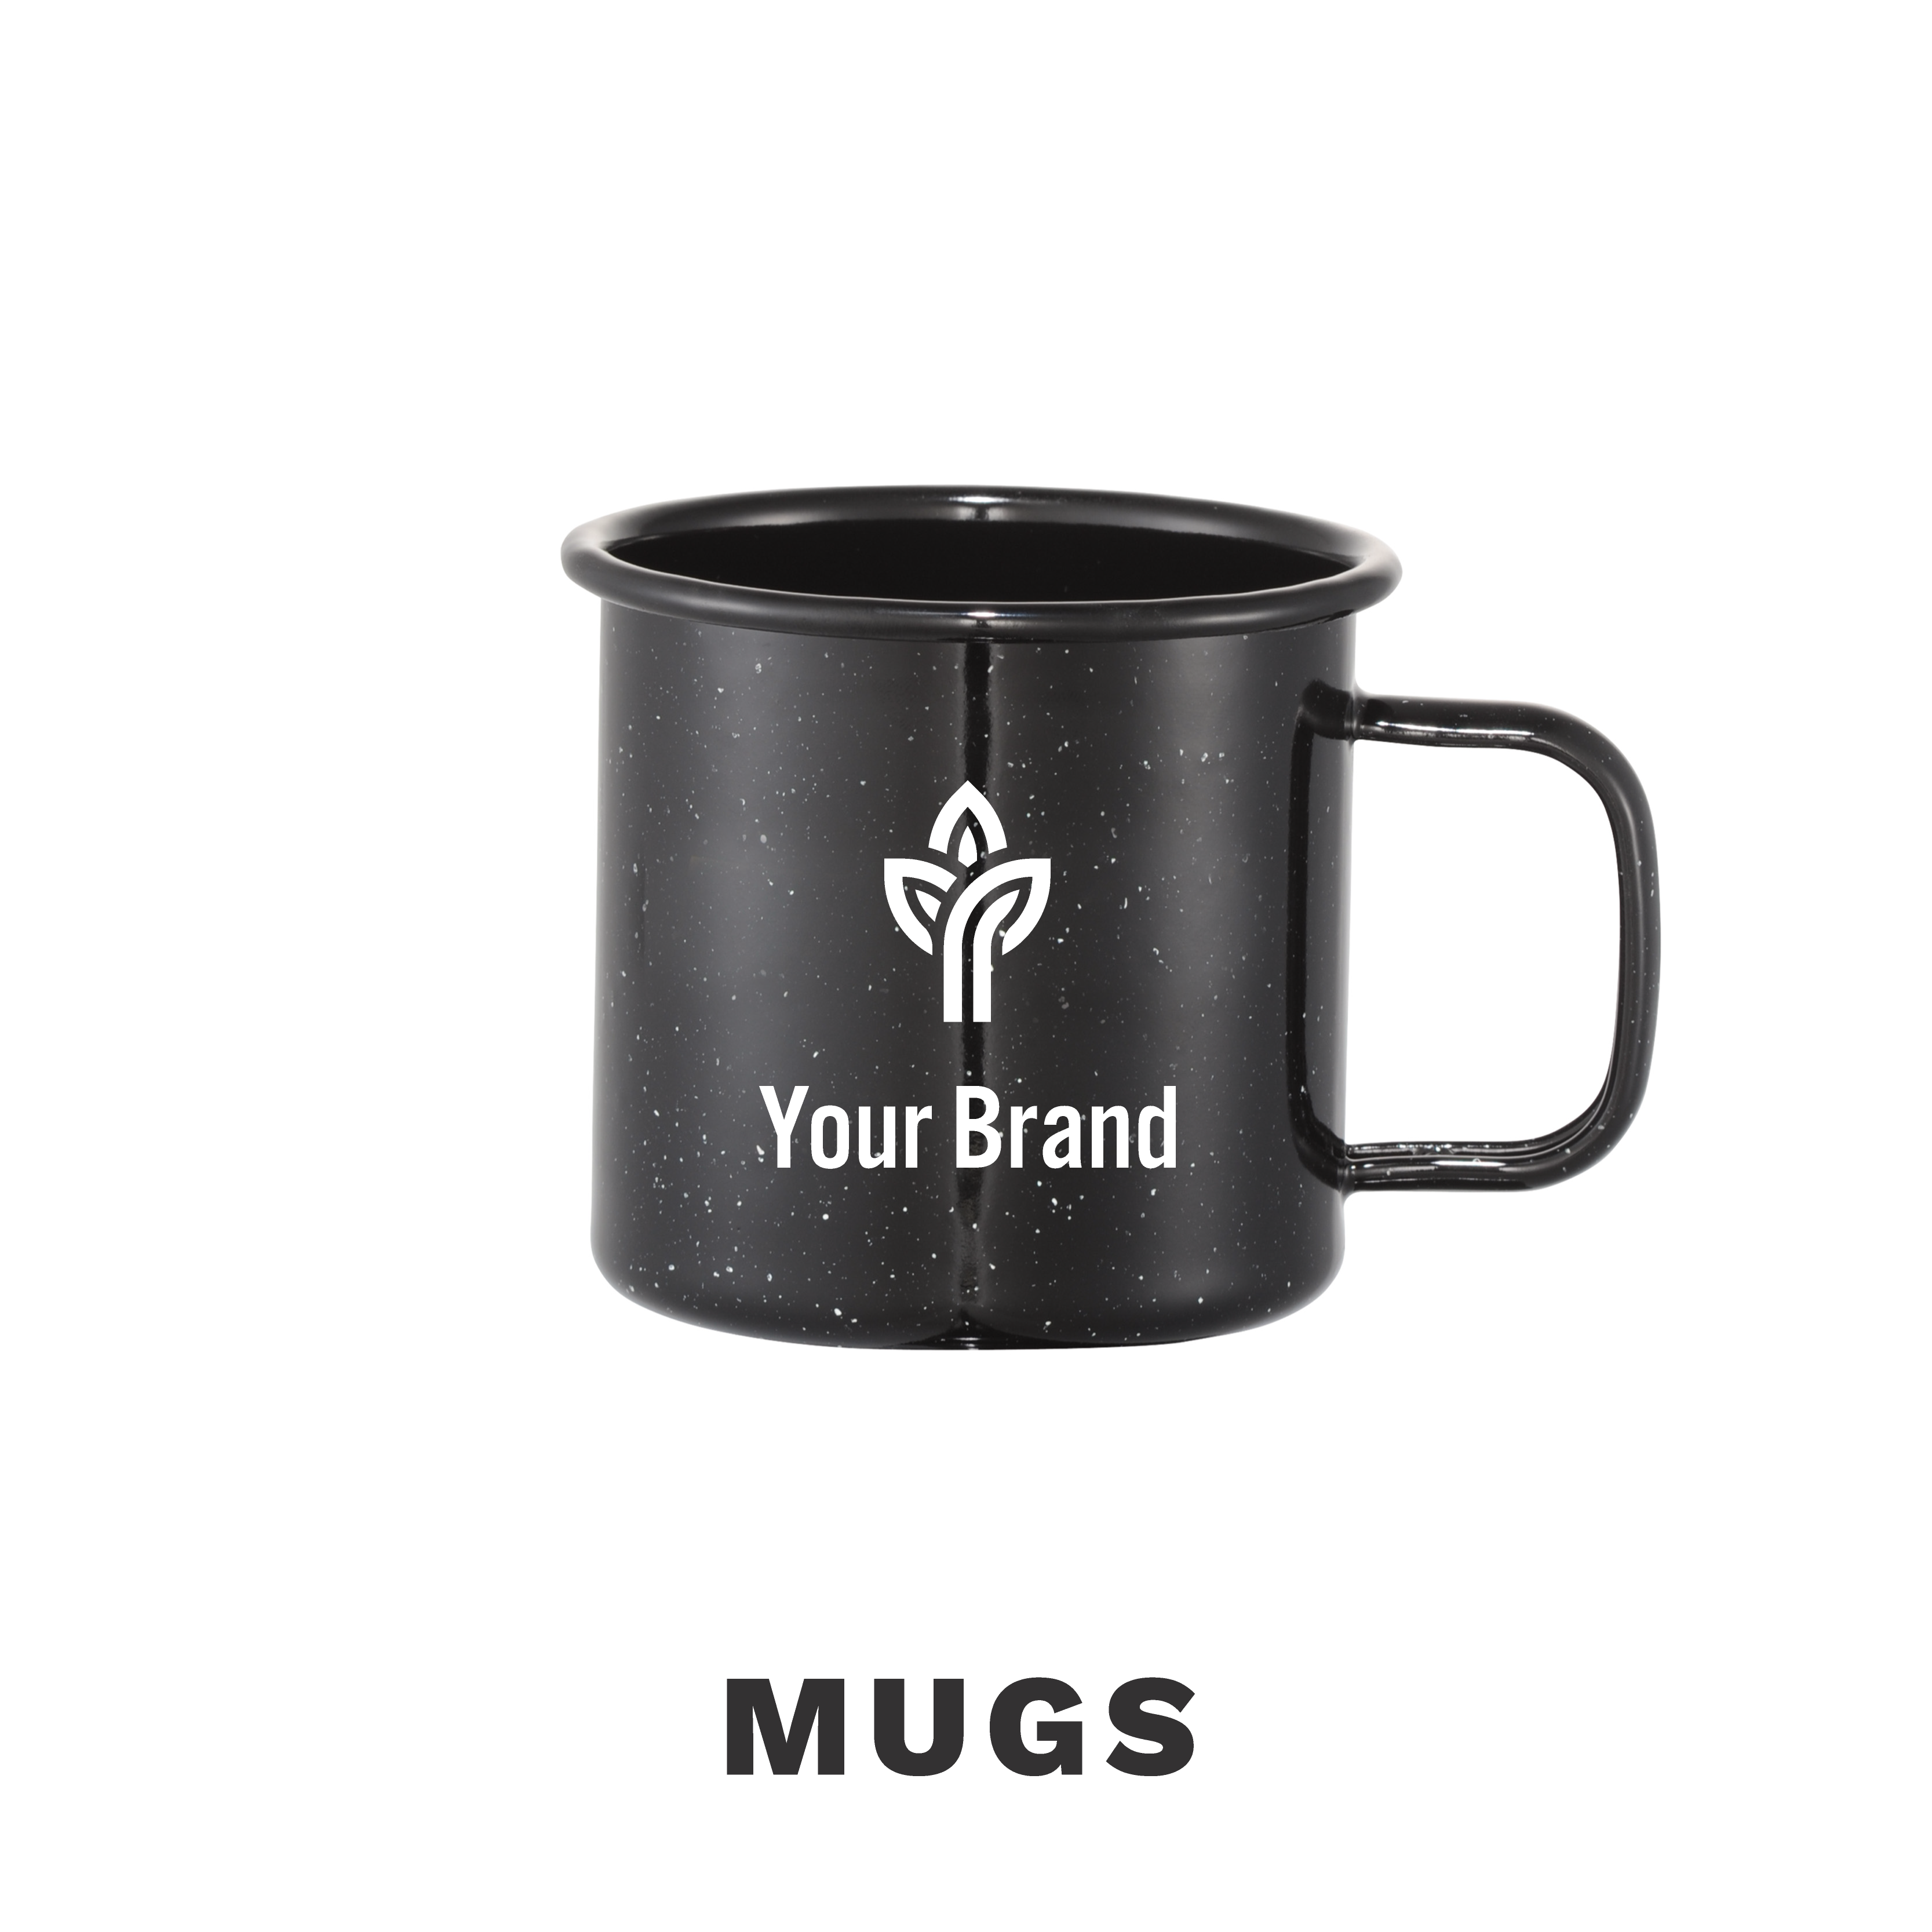 Your brand coffee mug